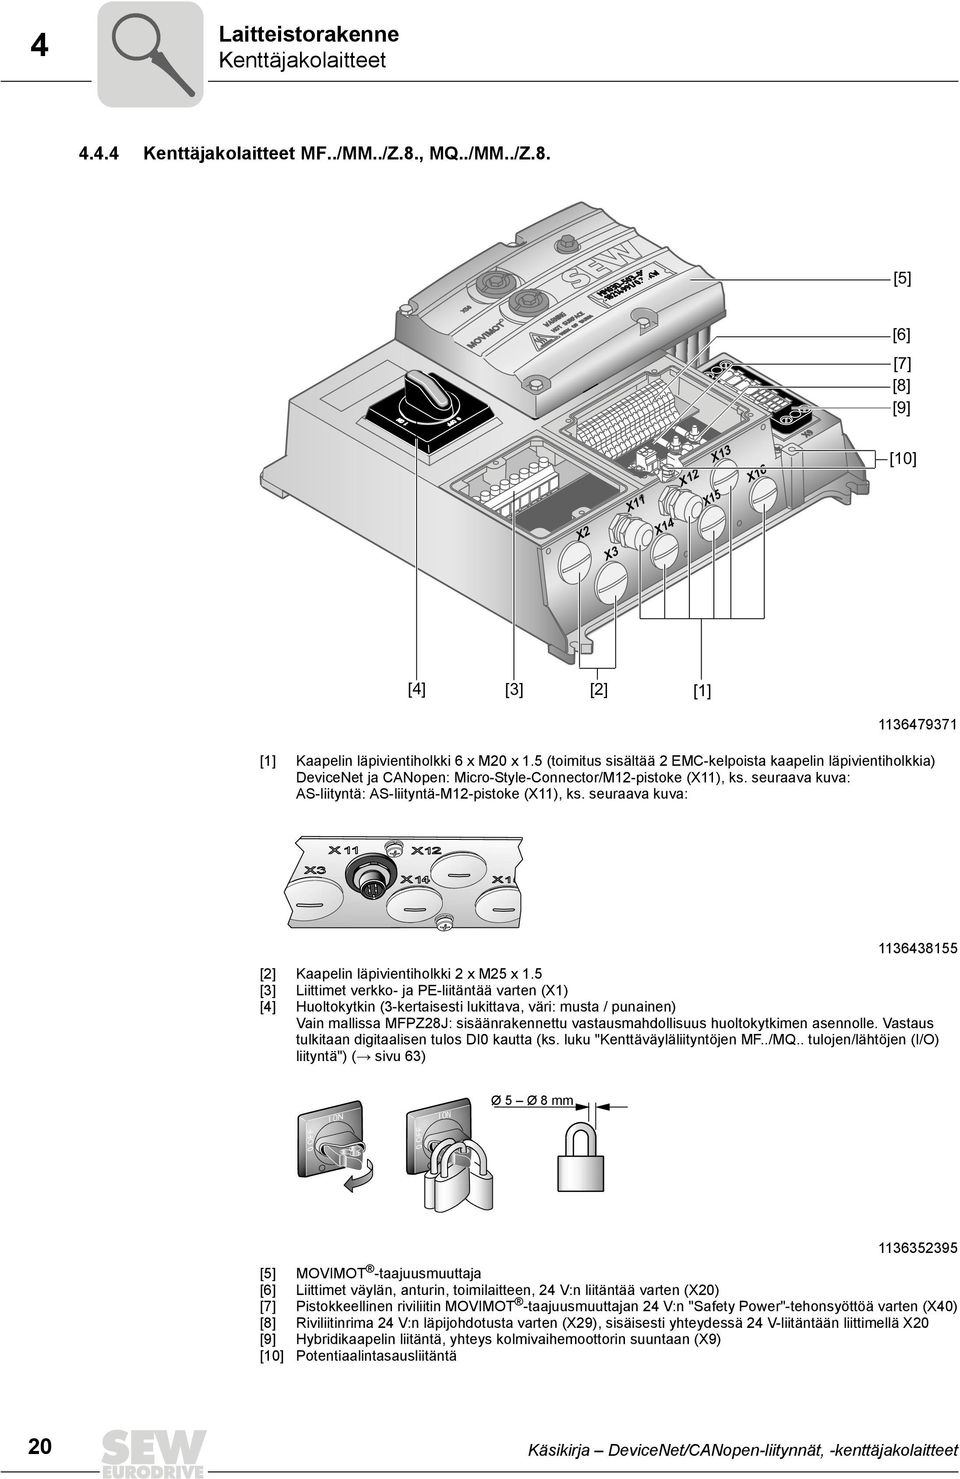 5 (toimitus sisältää 2 EMC-kelpoista kaapelin läpivientiholkkia) DeviceNet ja CANopen: Micro-Style-Connector/M12-pistoke (X11), ks. seuraava kuva: AS-liityntä: AS-liityntä-M12-pistoke (X11), ks.